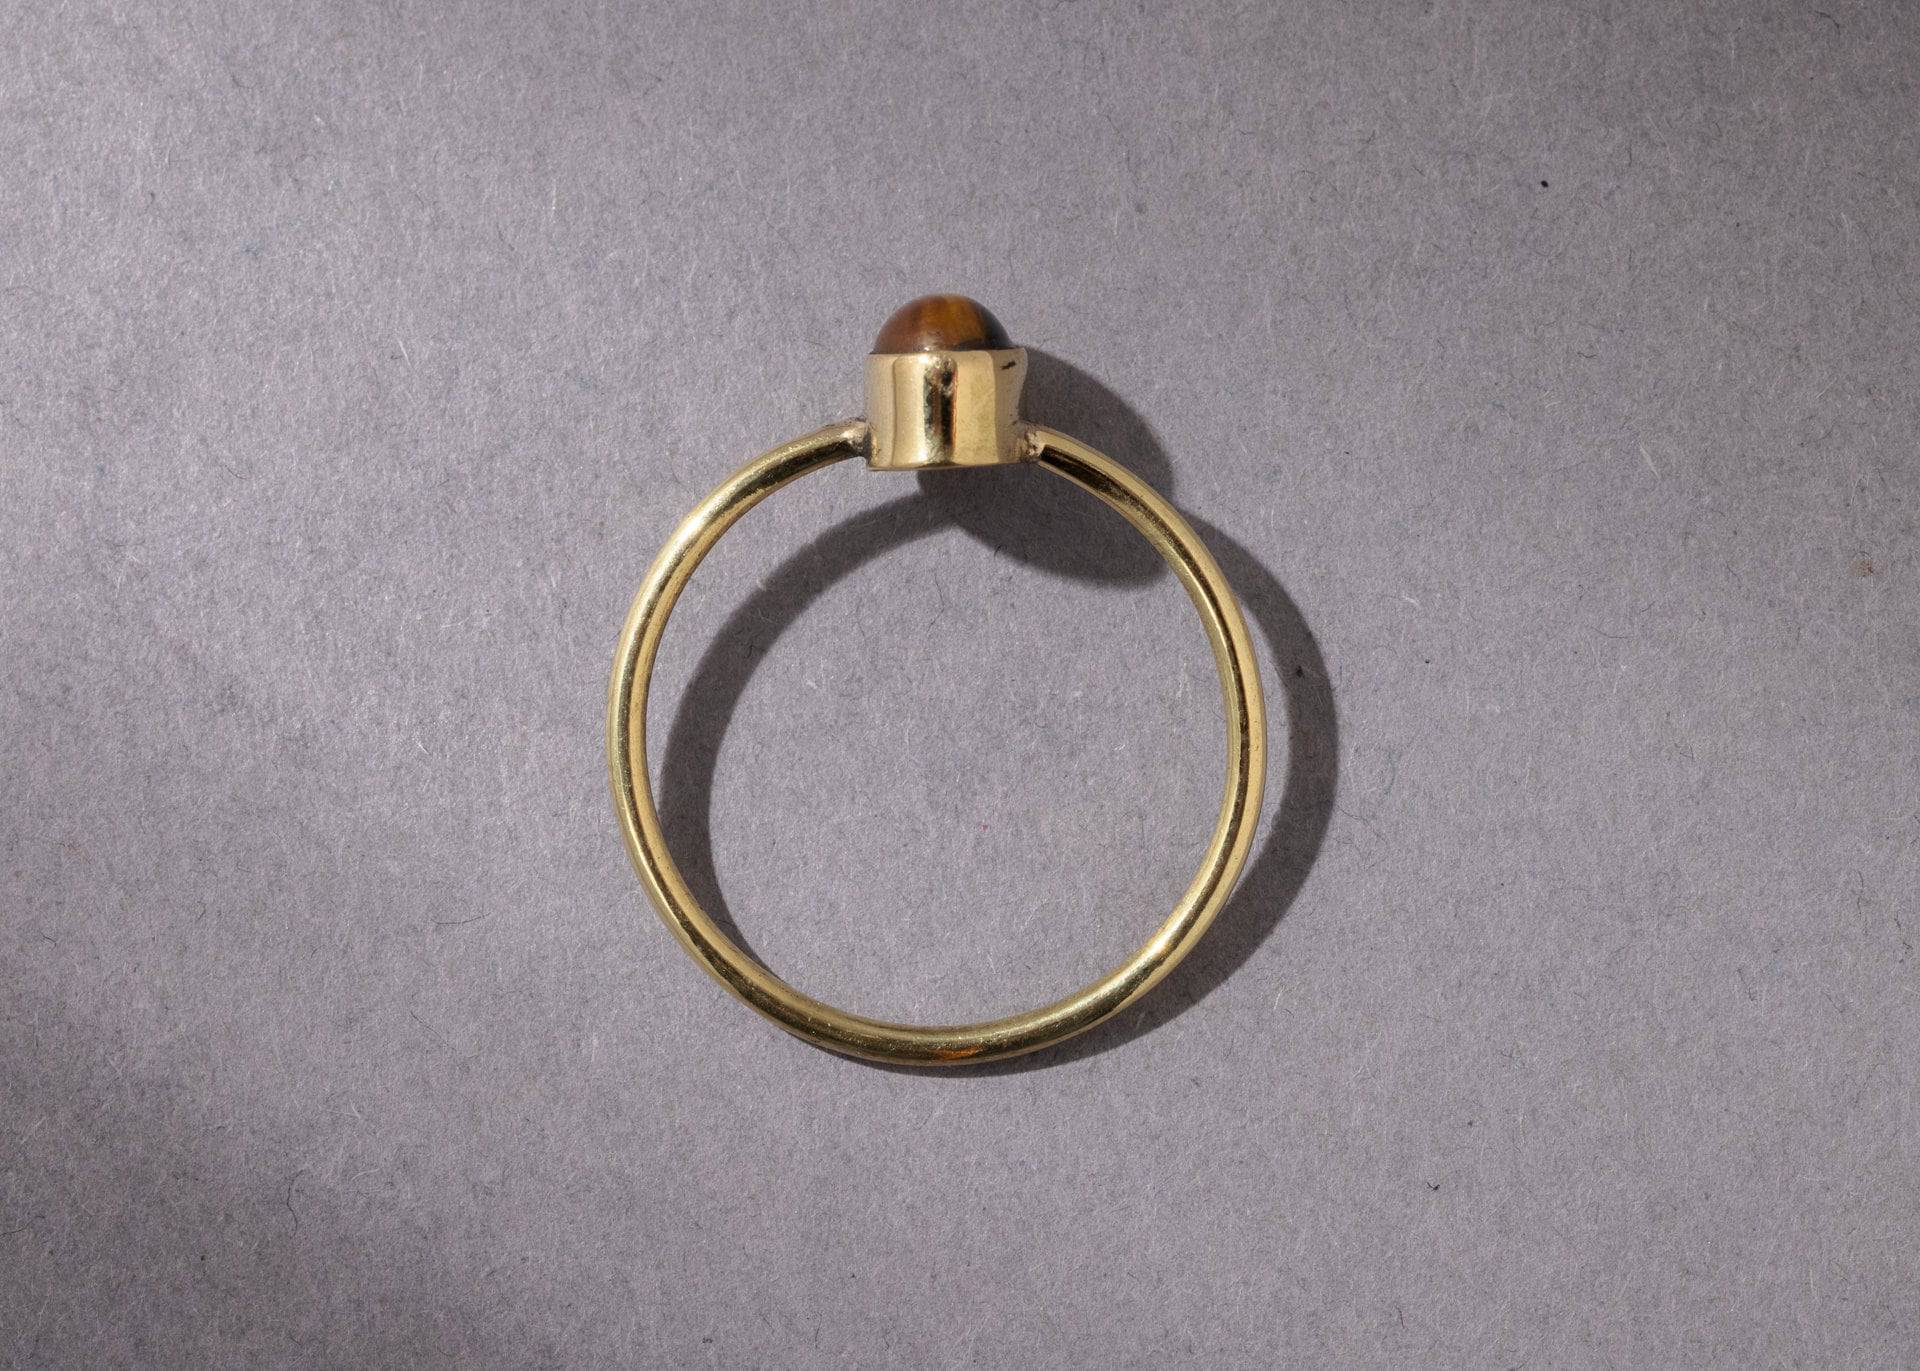 Feiner Tigerauge Ring mit ovalem Stein handgemacht - NooeBerlin